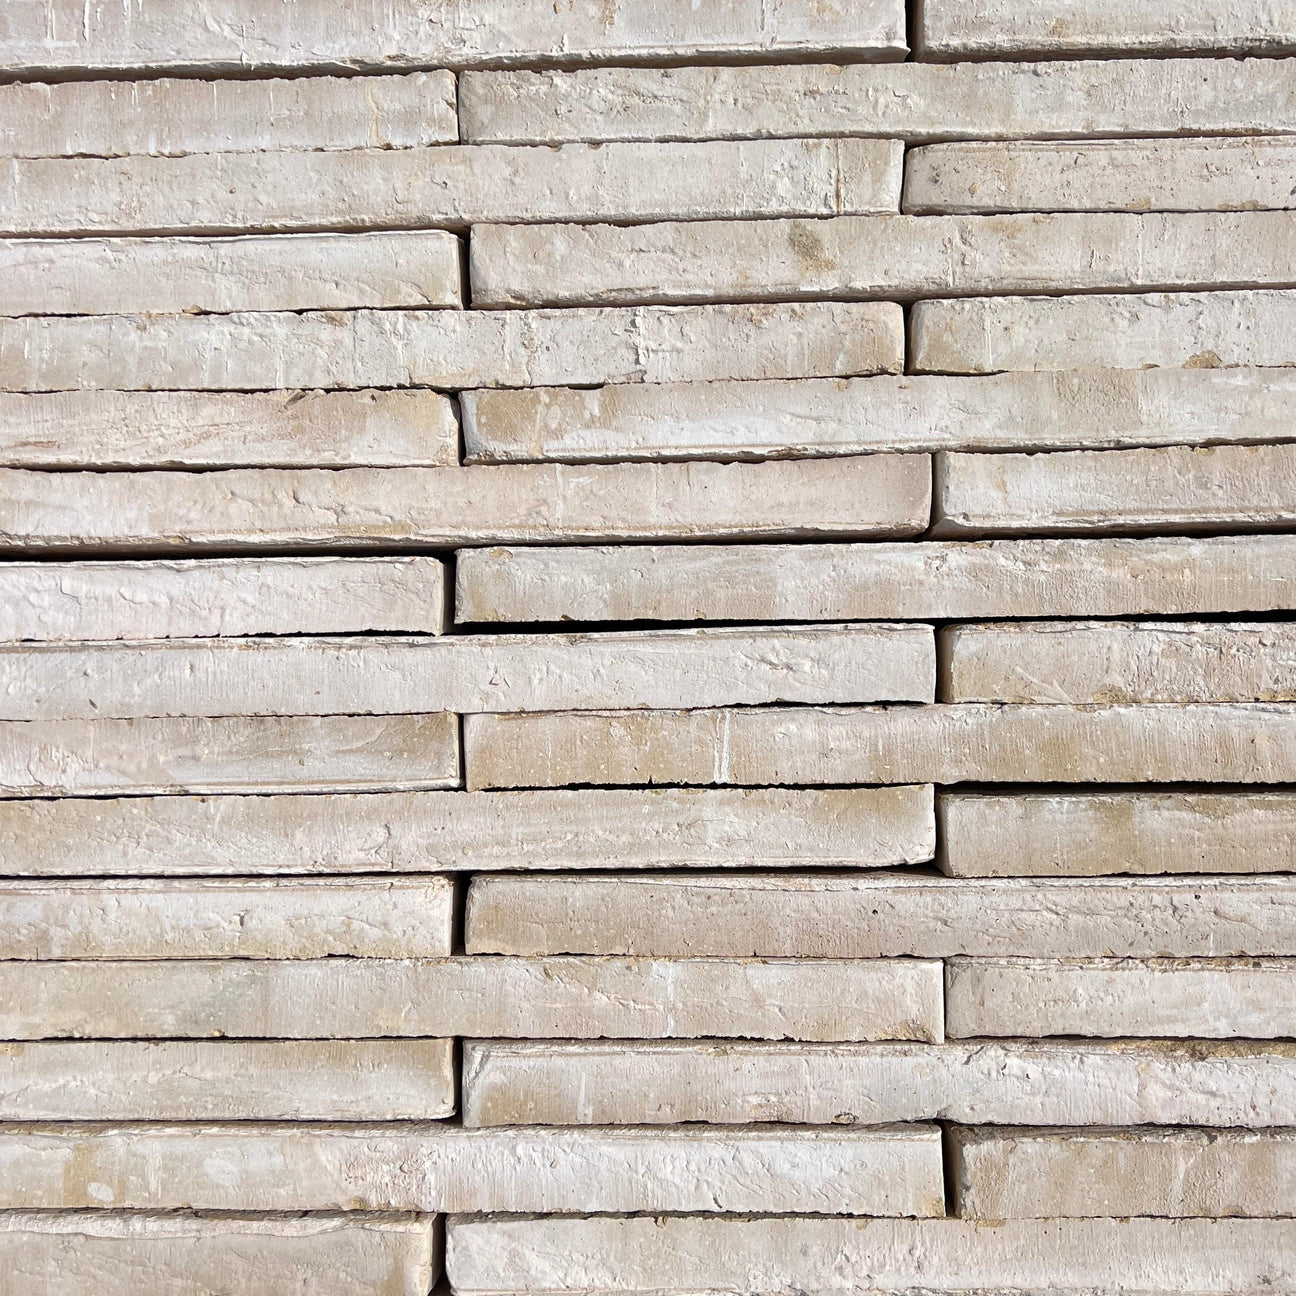 New Linear Bricks - Reclaimed Brick Company